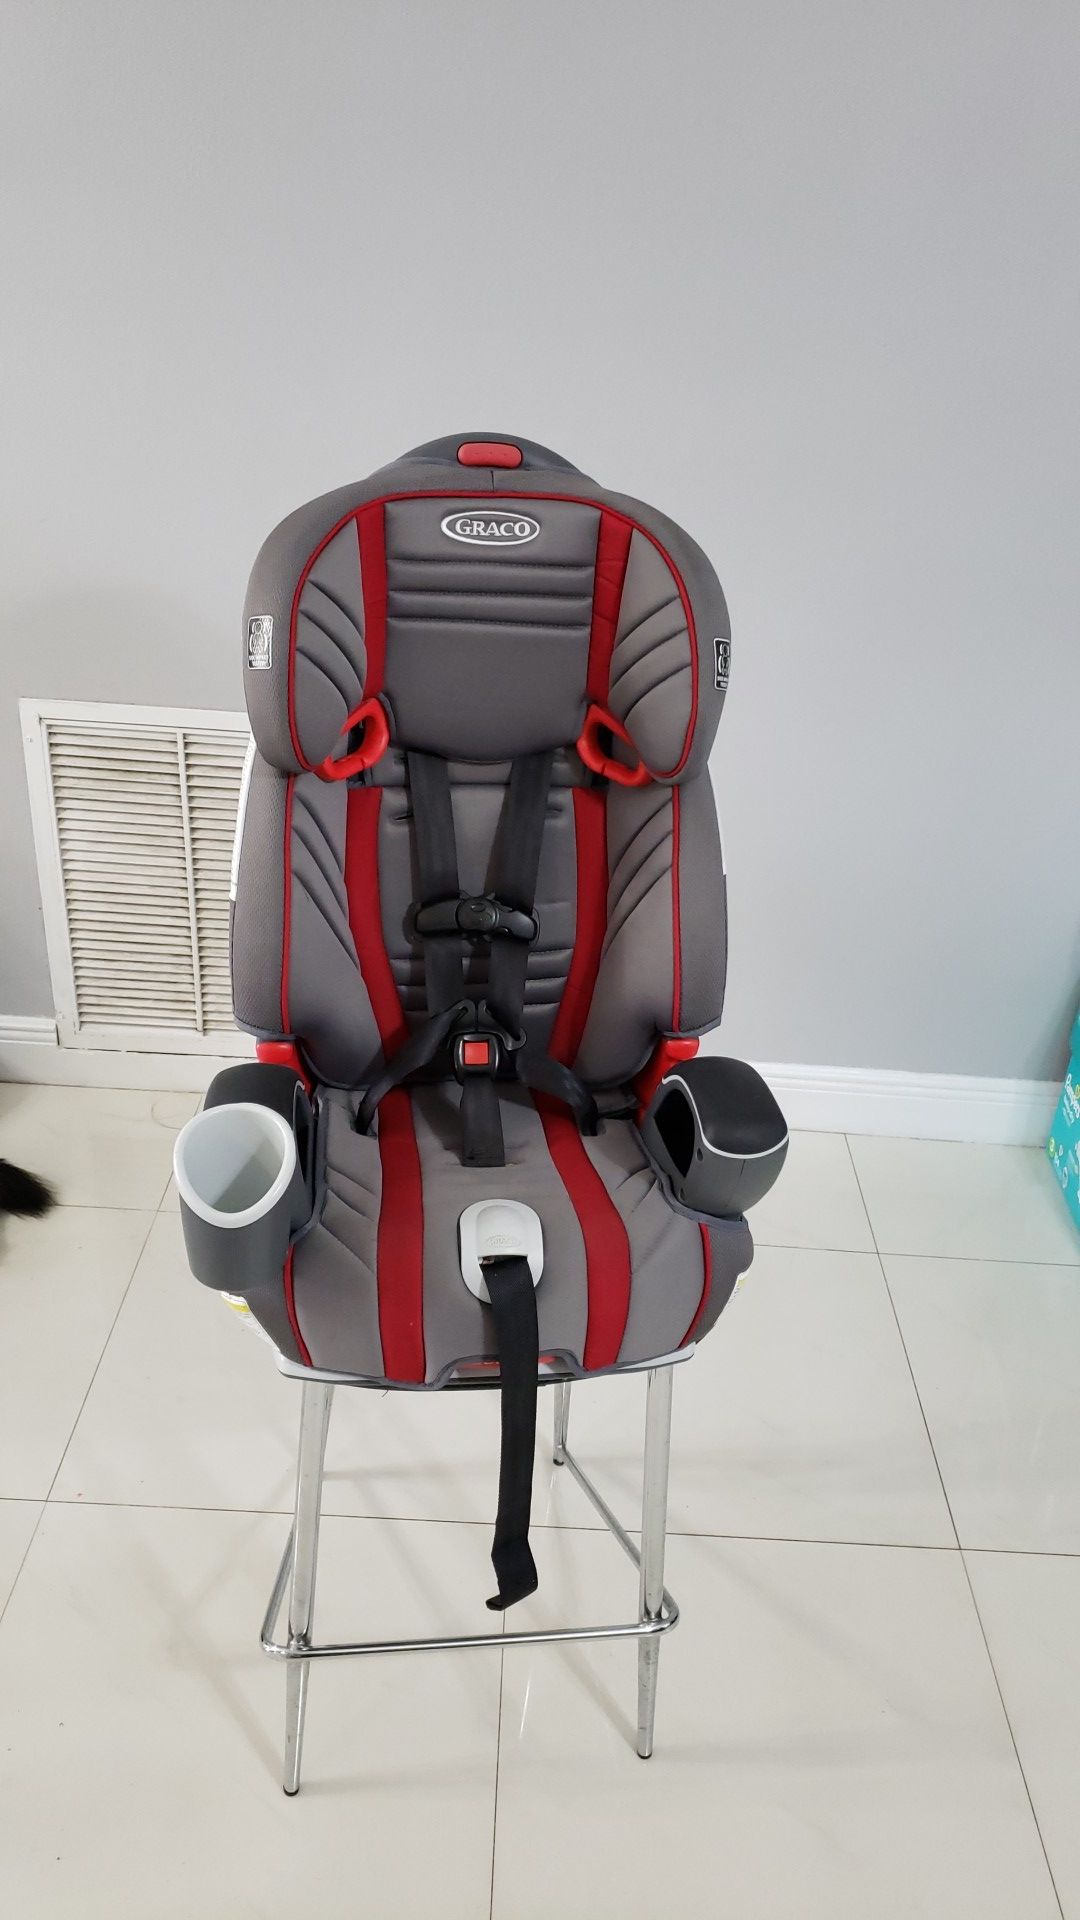 Toddler car seat/baby seat